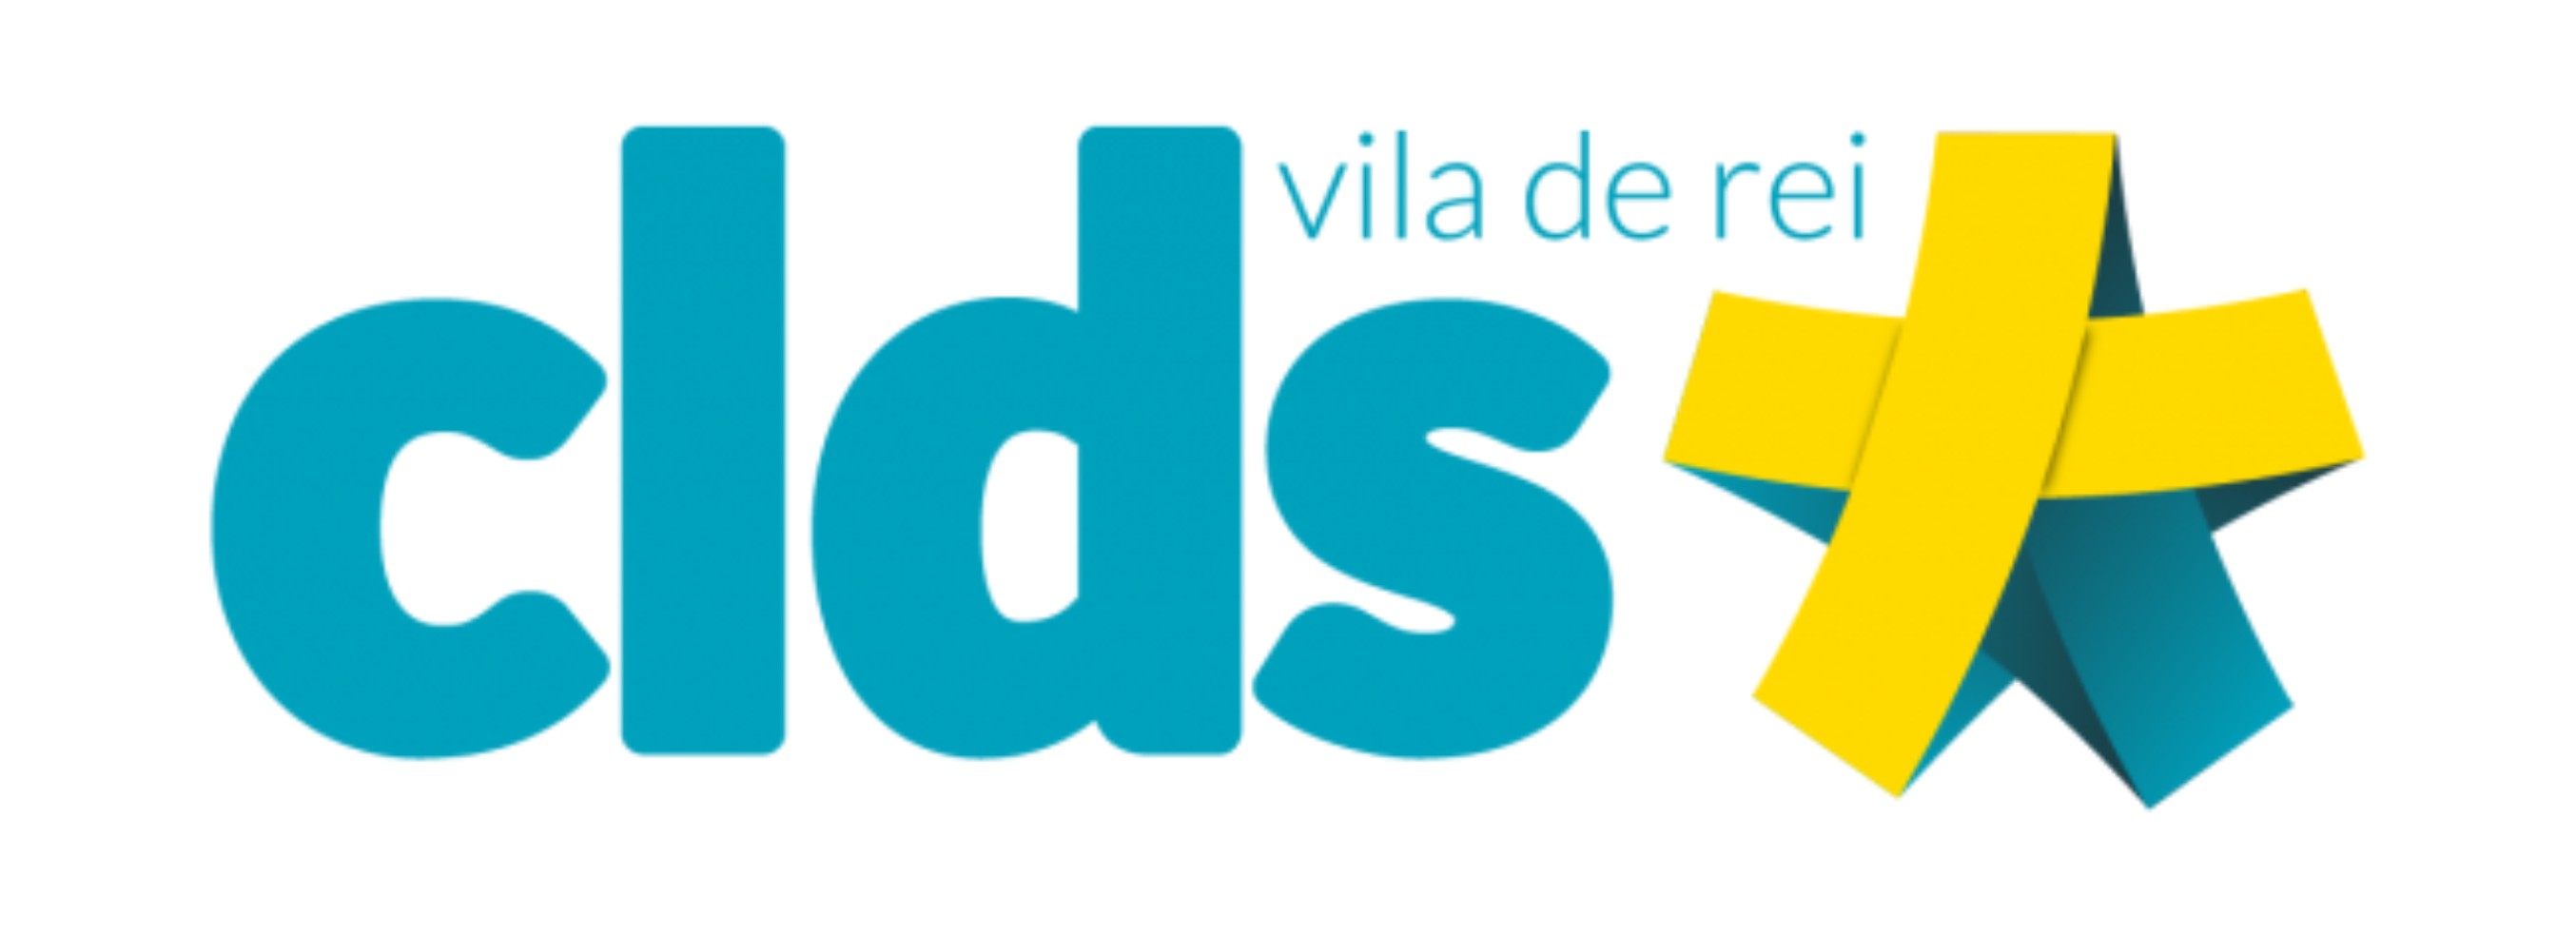 Vila de Rei prepara candidatura ao Programa CLDS-3G